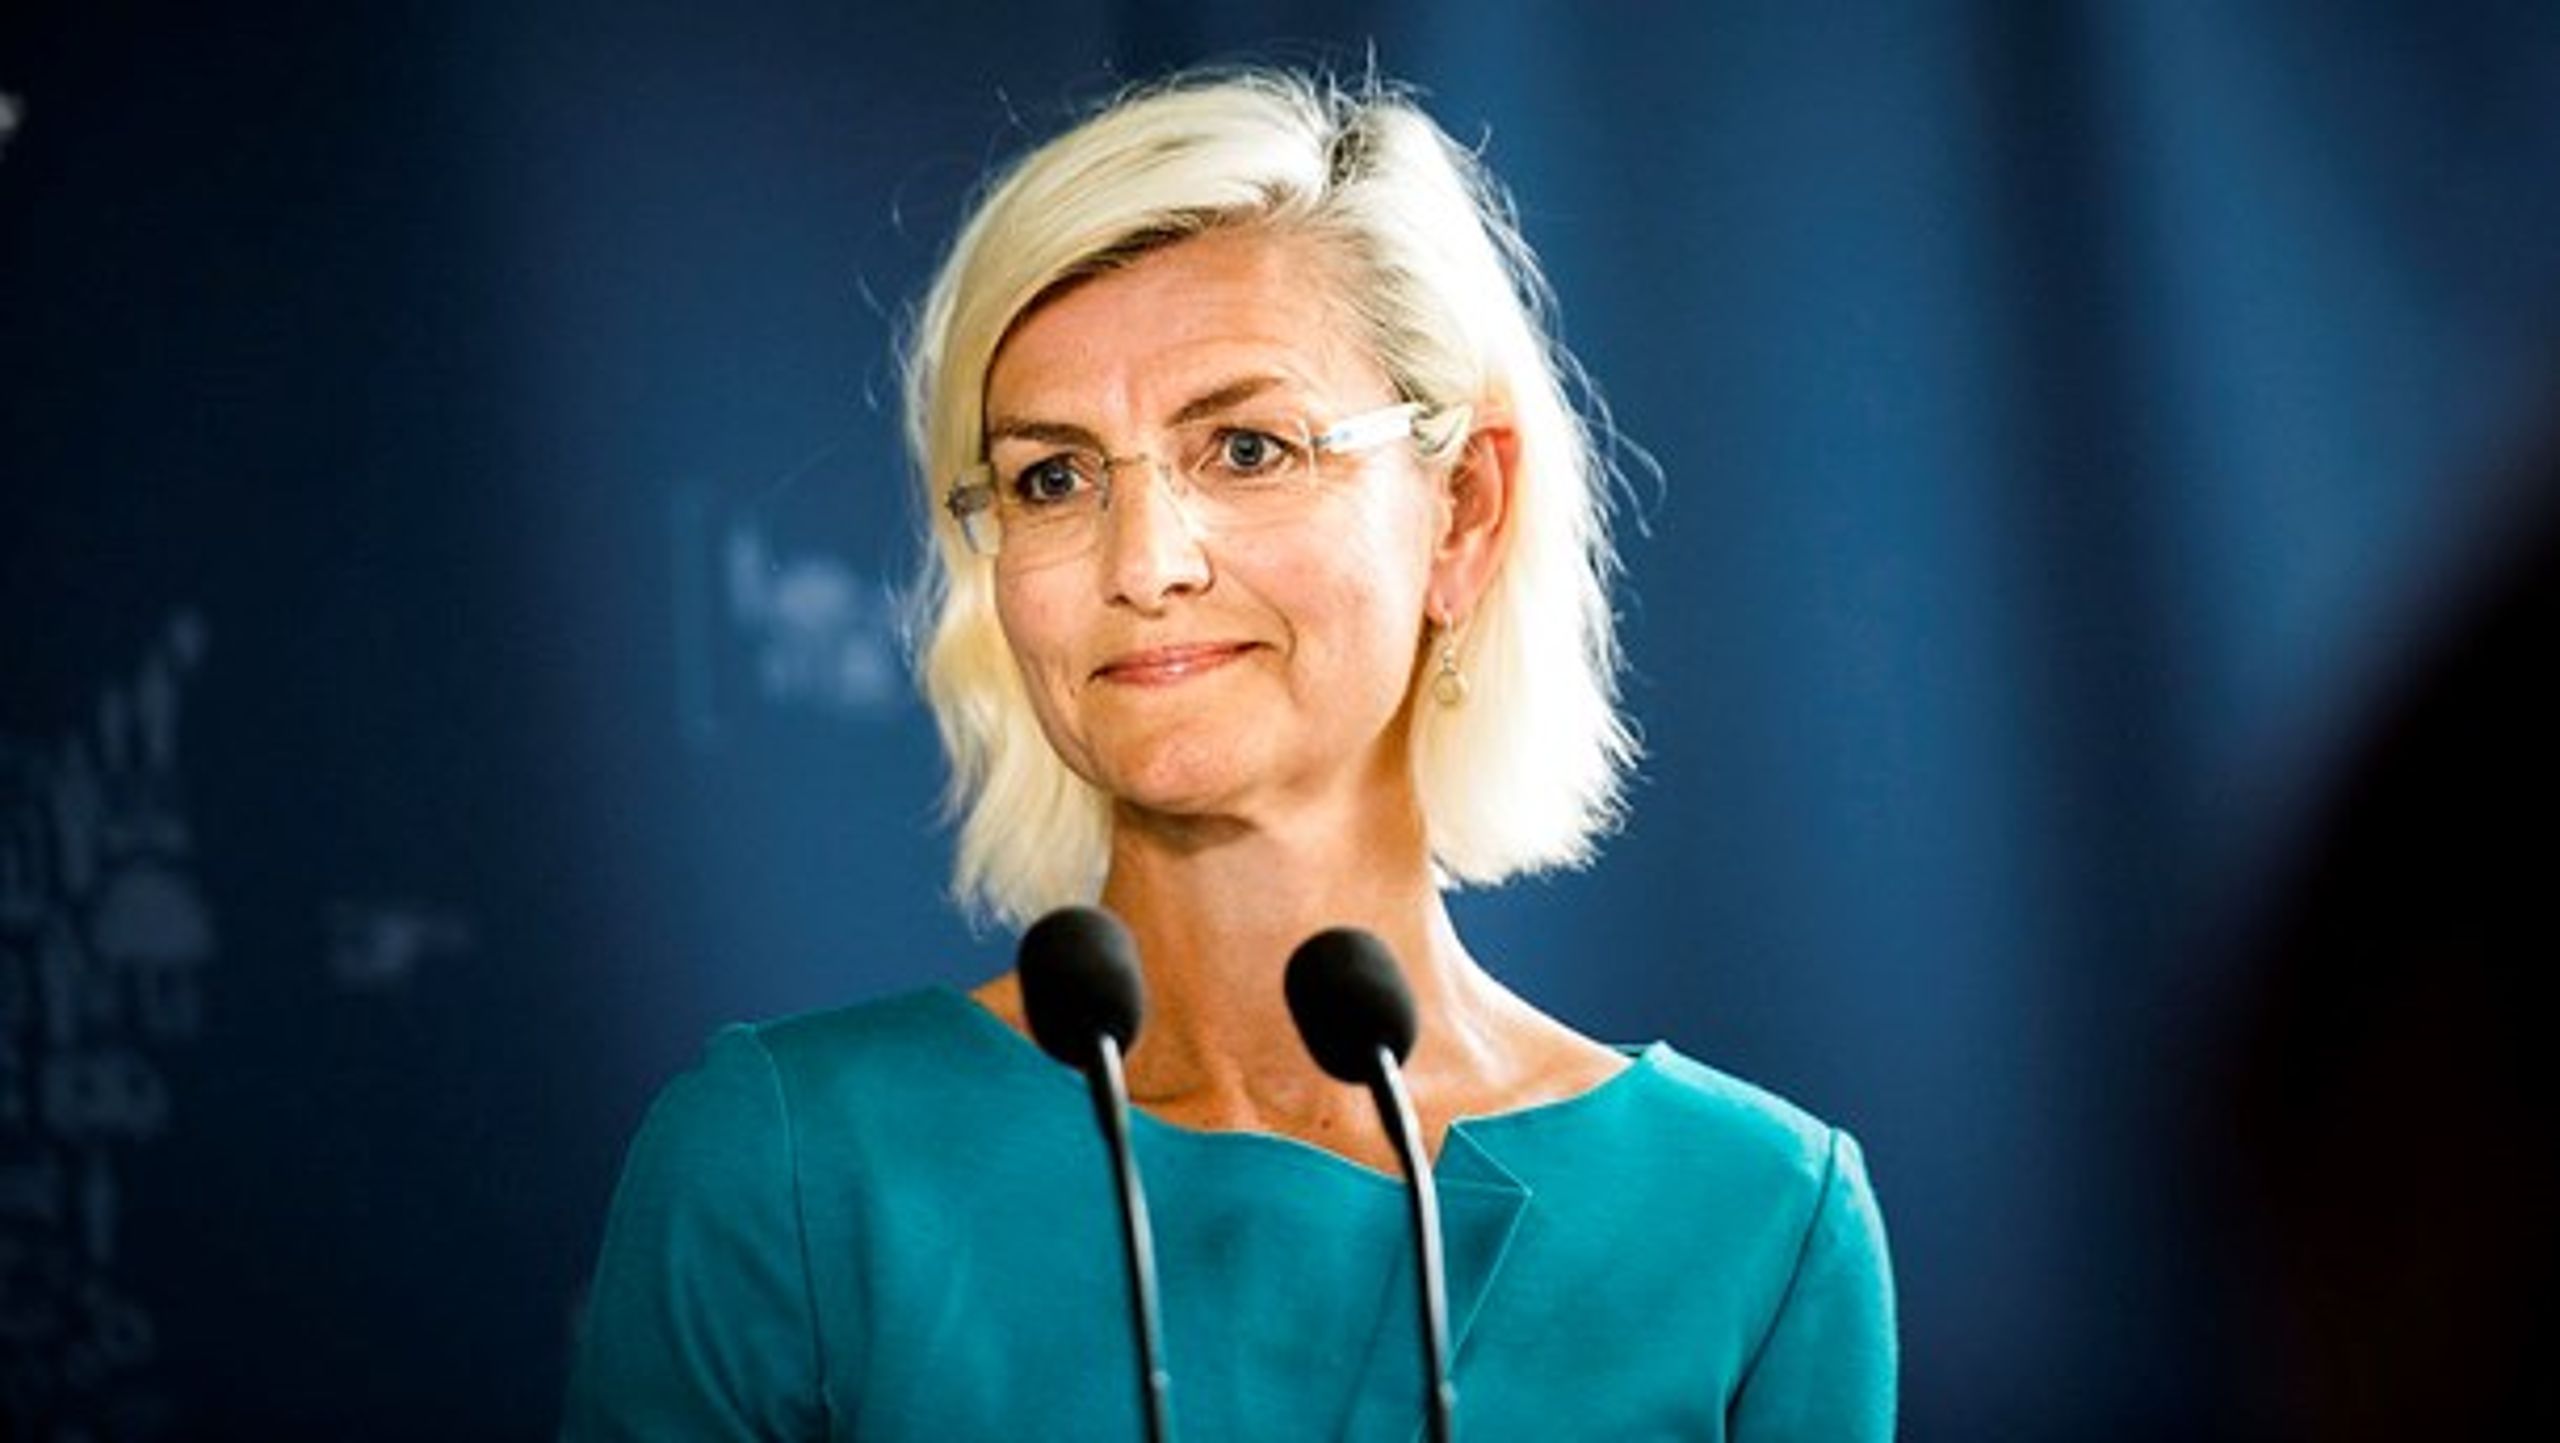 Uddannelses- og forskningsminister Ulla Tørnæs (V) lægger op til, at de videregående uddannelser skal levere besparelser på to procent i yderligere et år.<br>